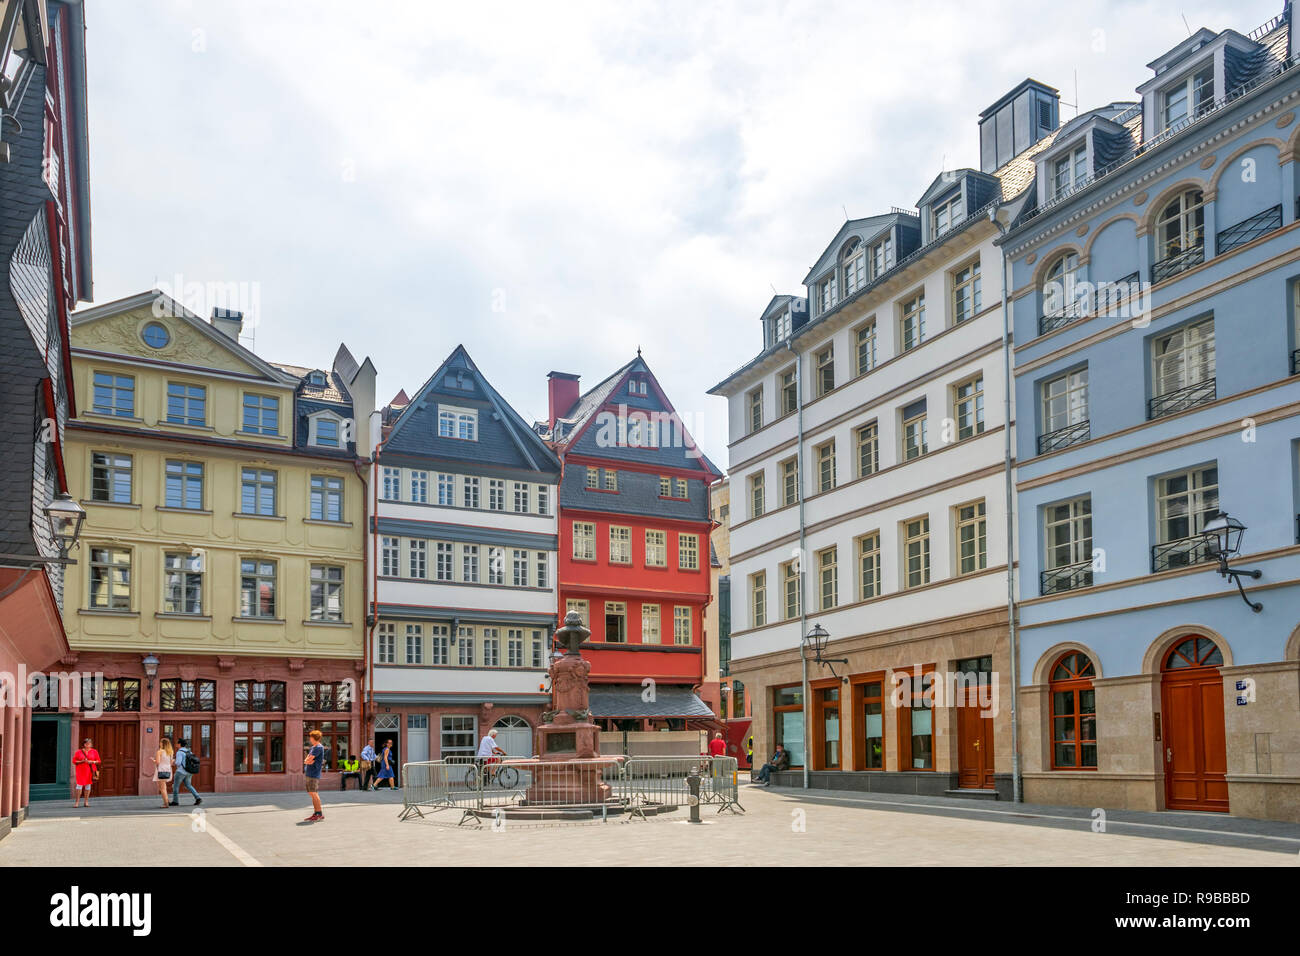 New historical City of Frankfurt am Main, Germany Stock Photo